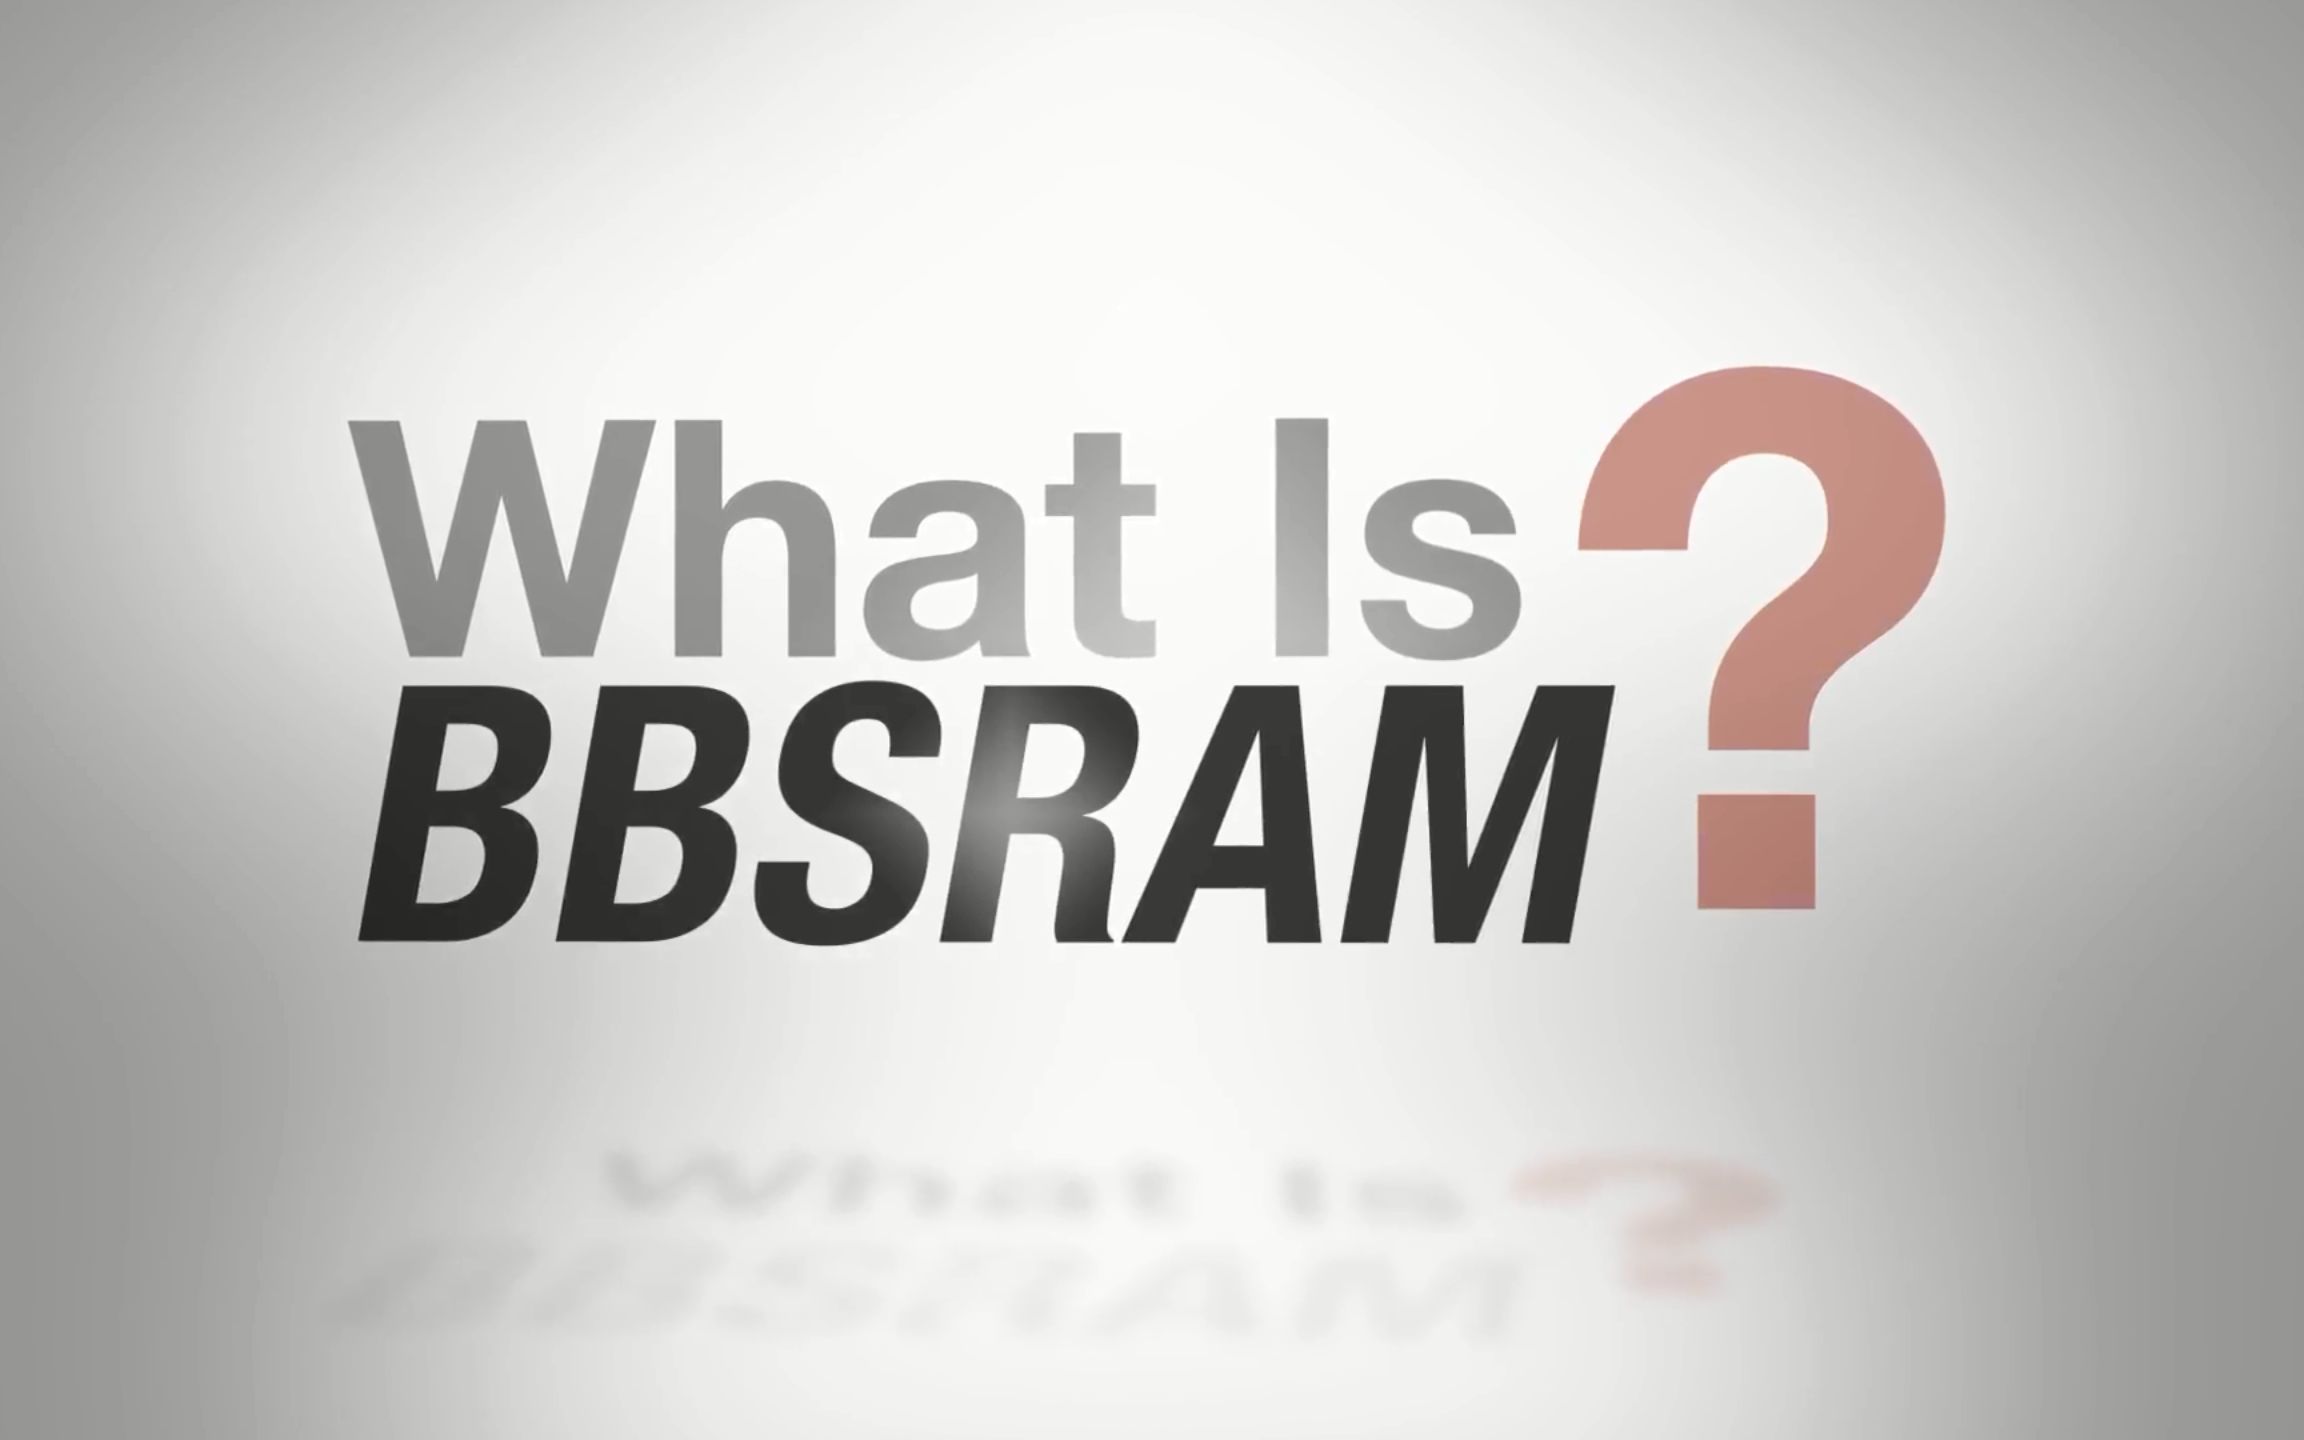 【搞懂存储】什么是BBSRAM？#存储技术 